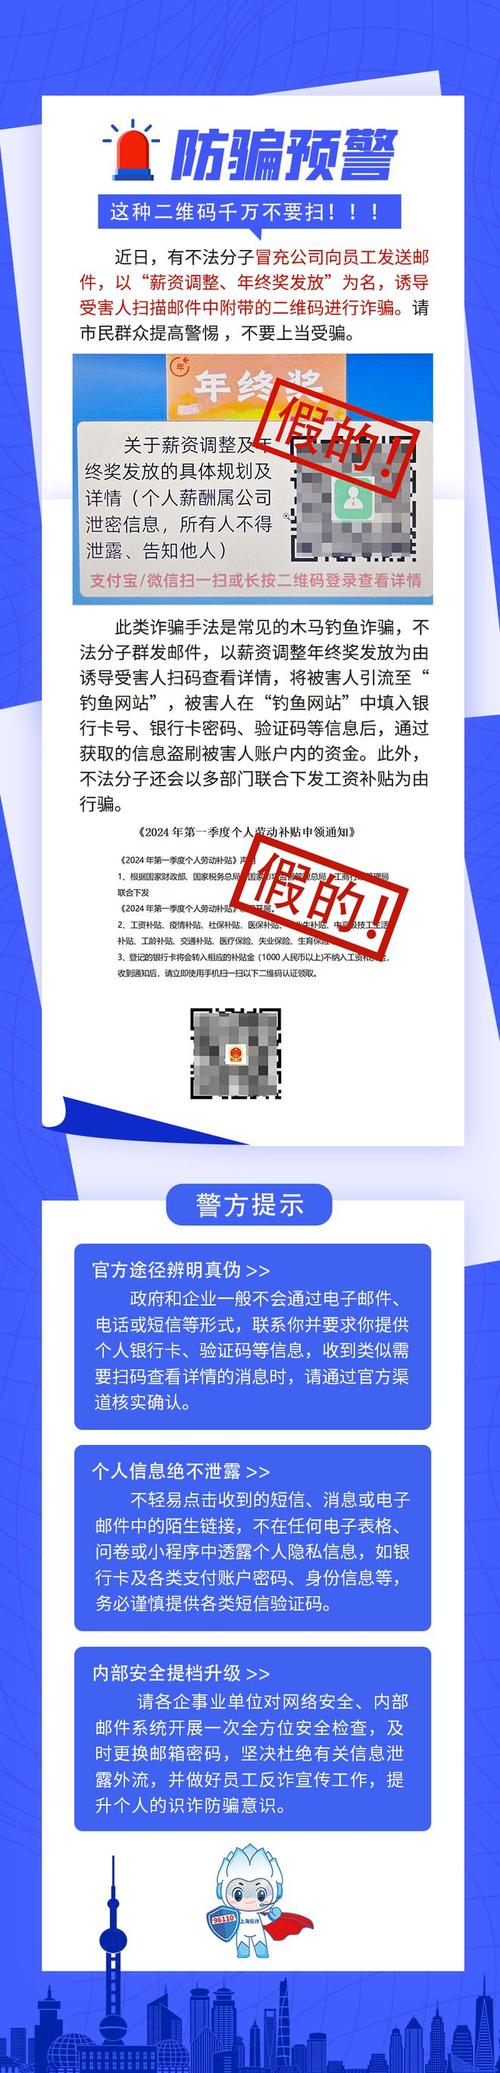 上海反诈中心提示这种二维码千万不要扫